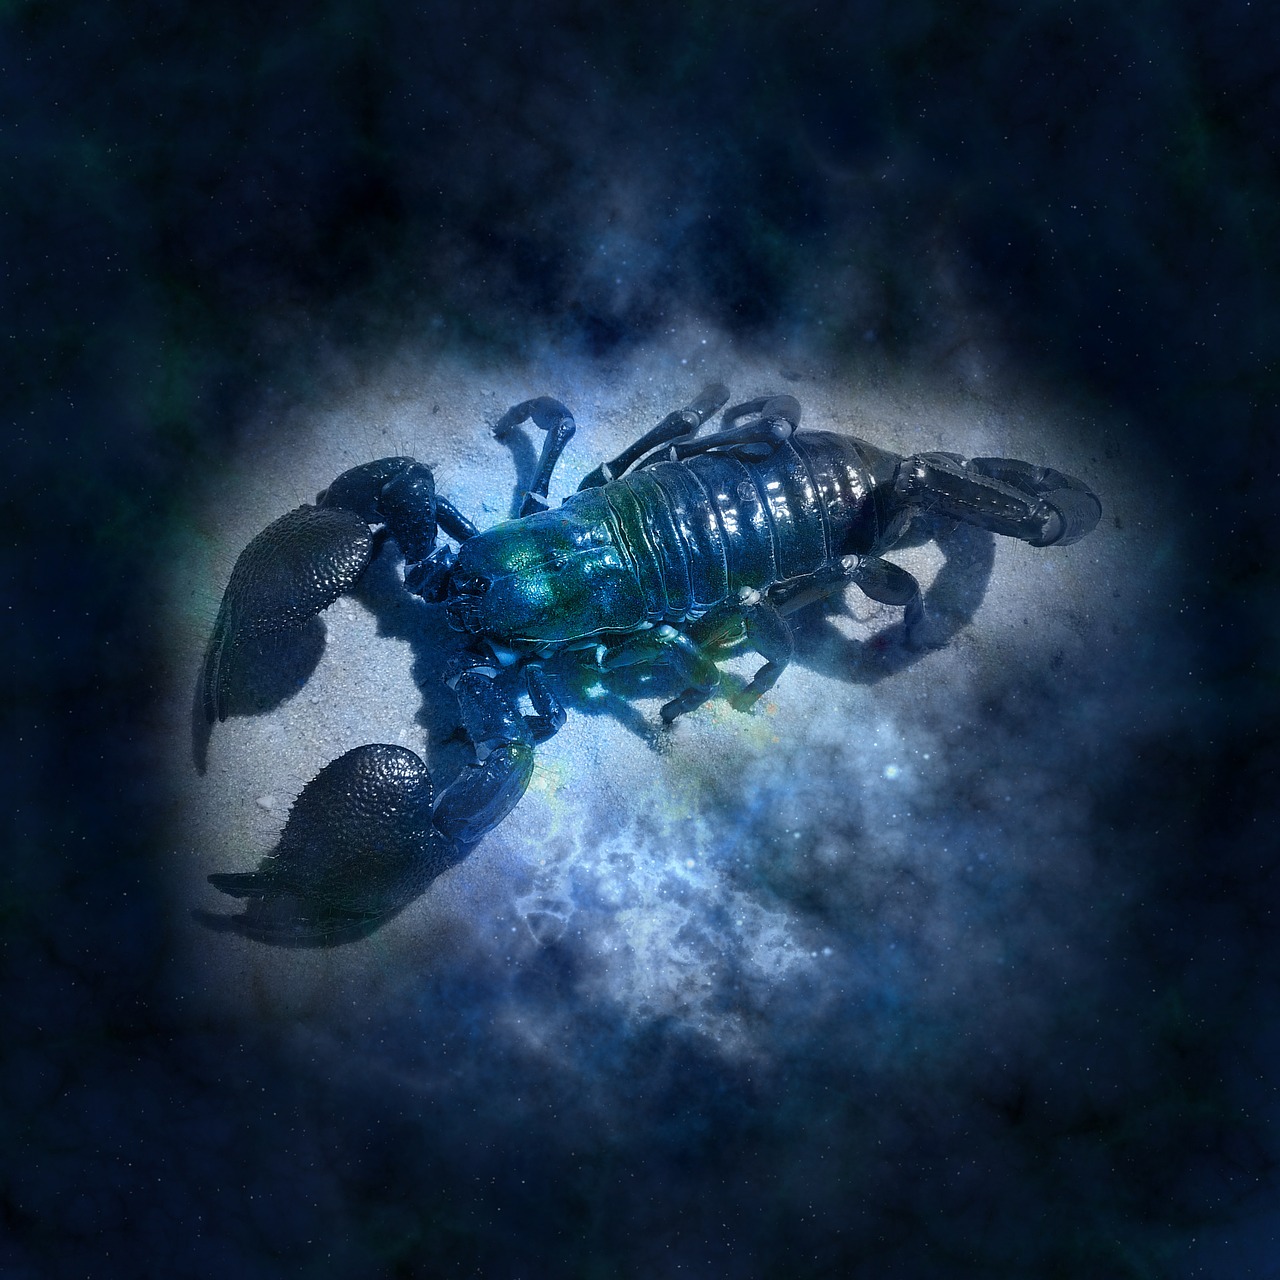 Riba škorpion ljubavni horoskop